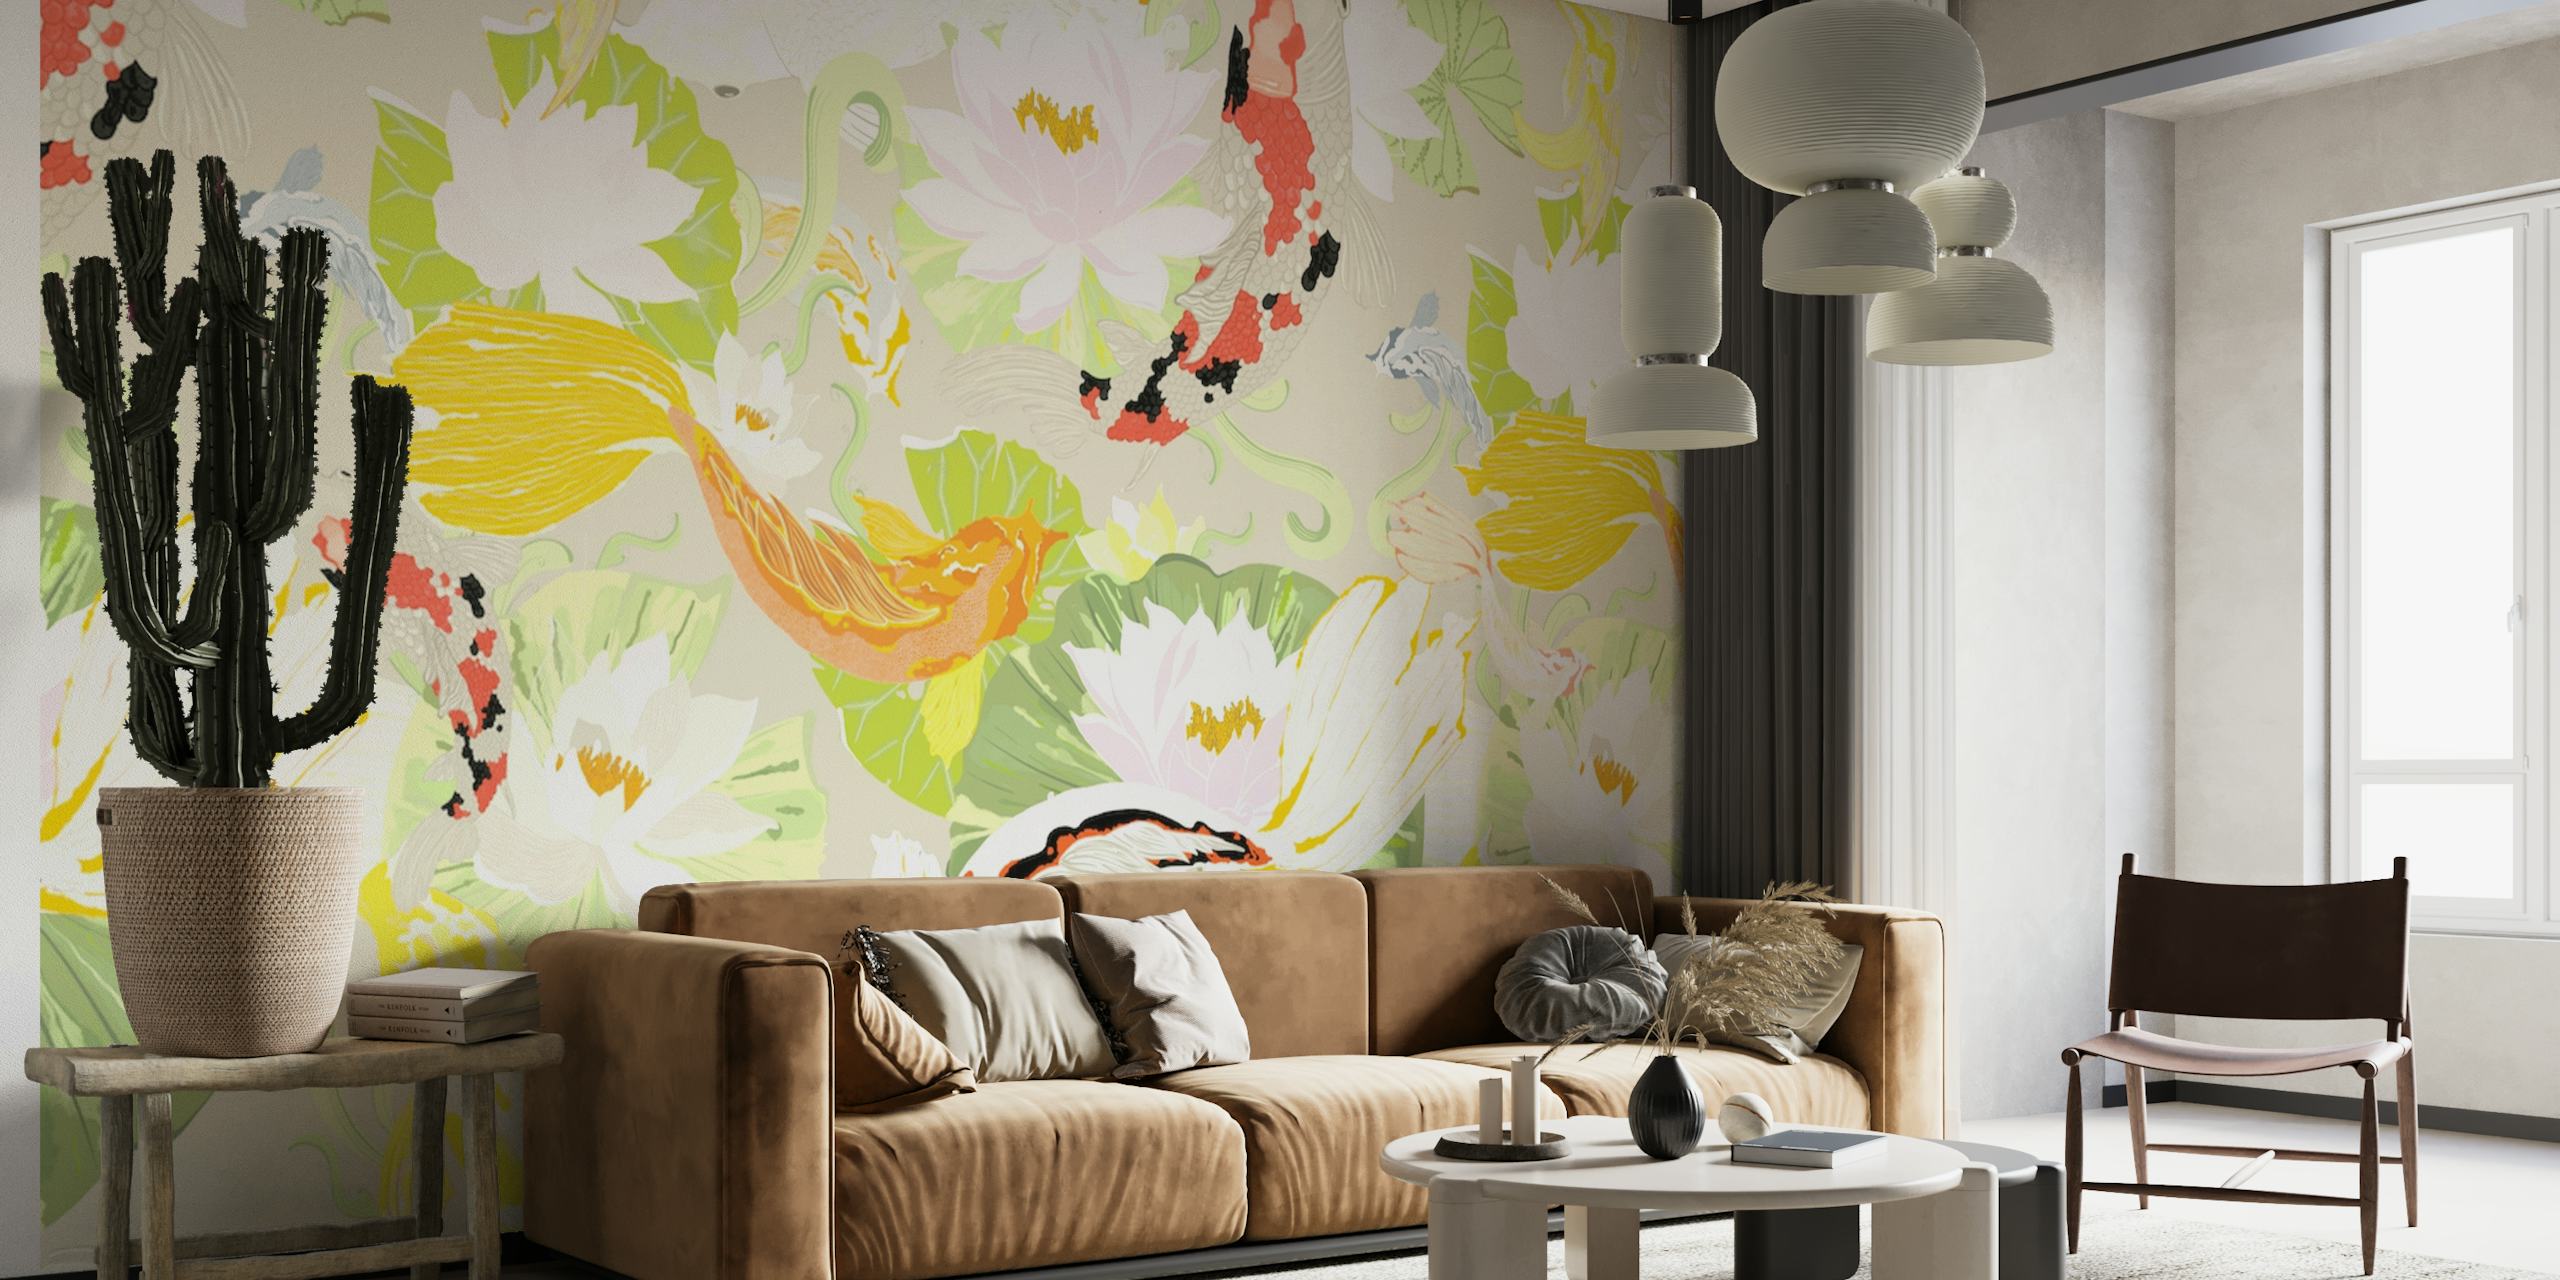 Elegant koi fish and floral wall mural design